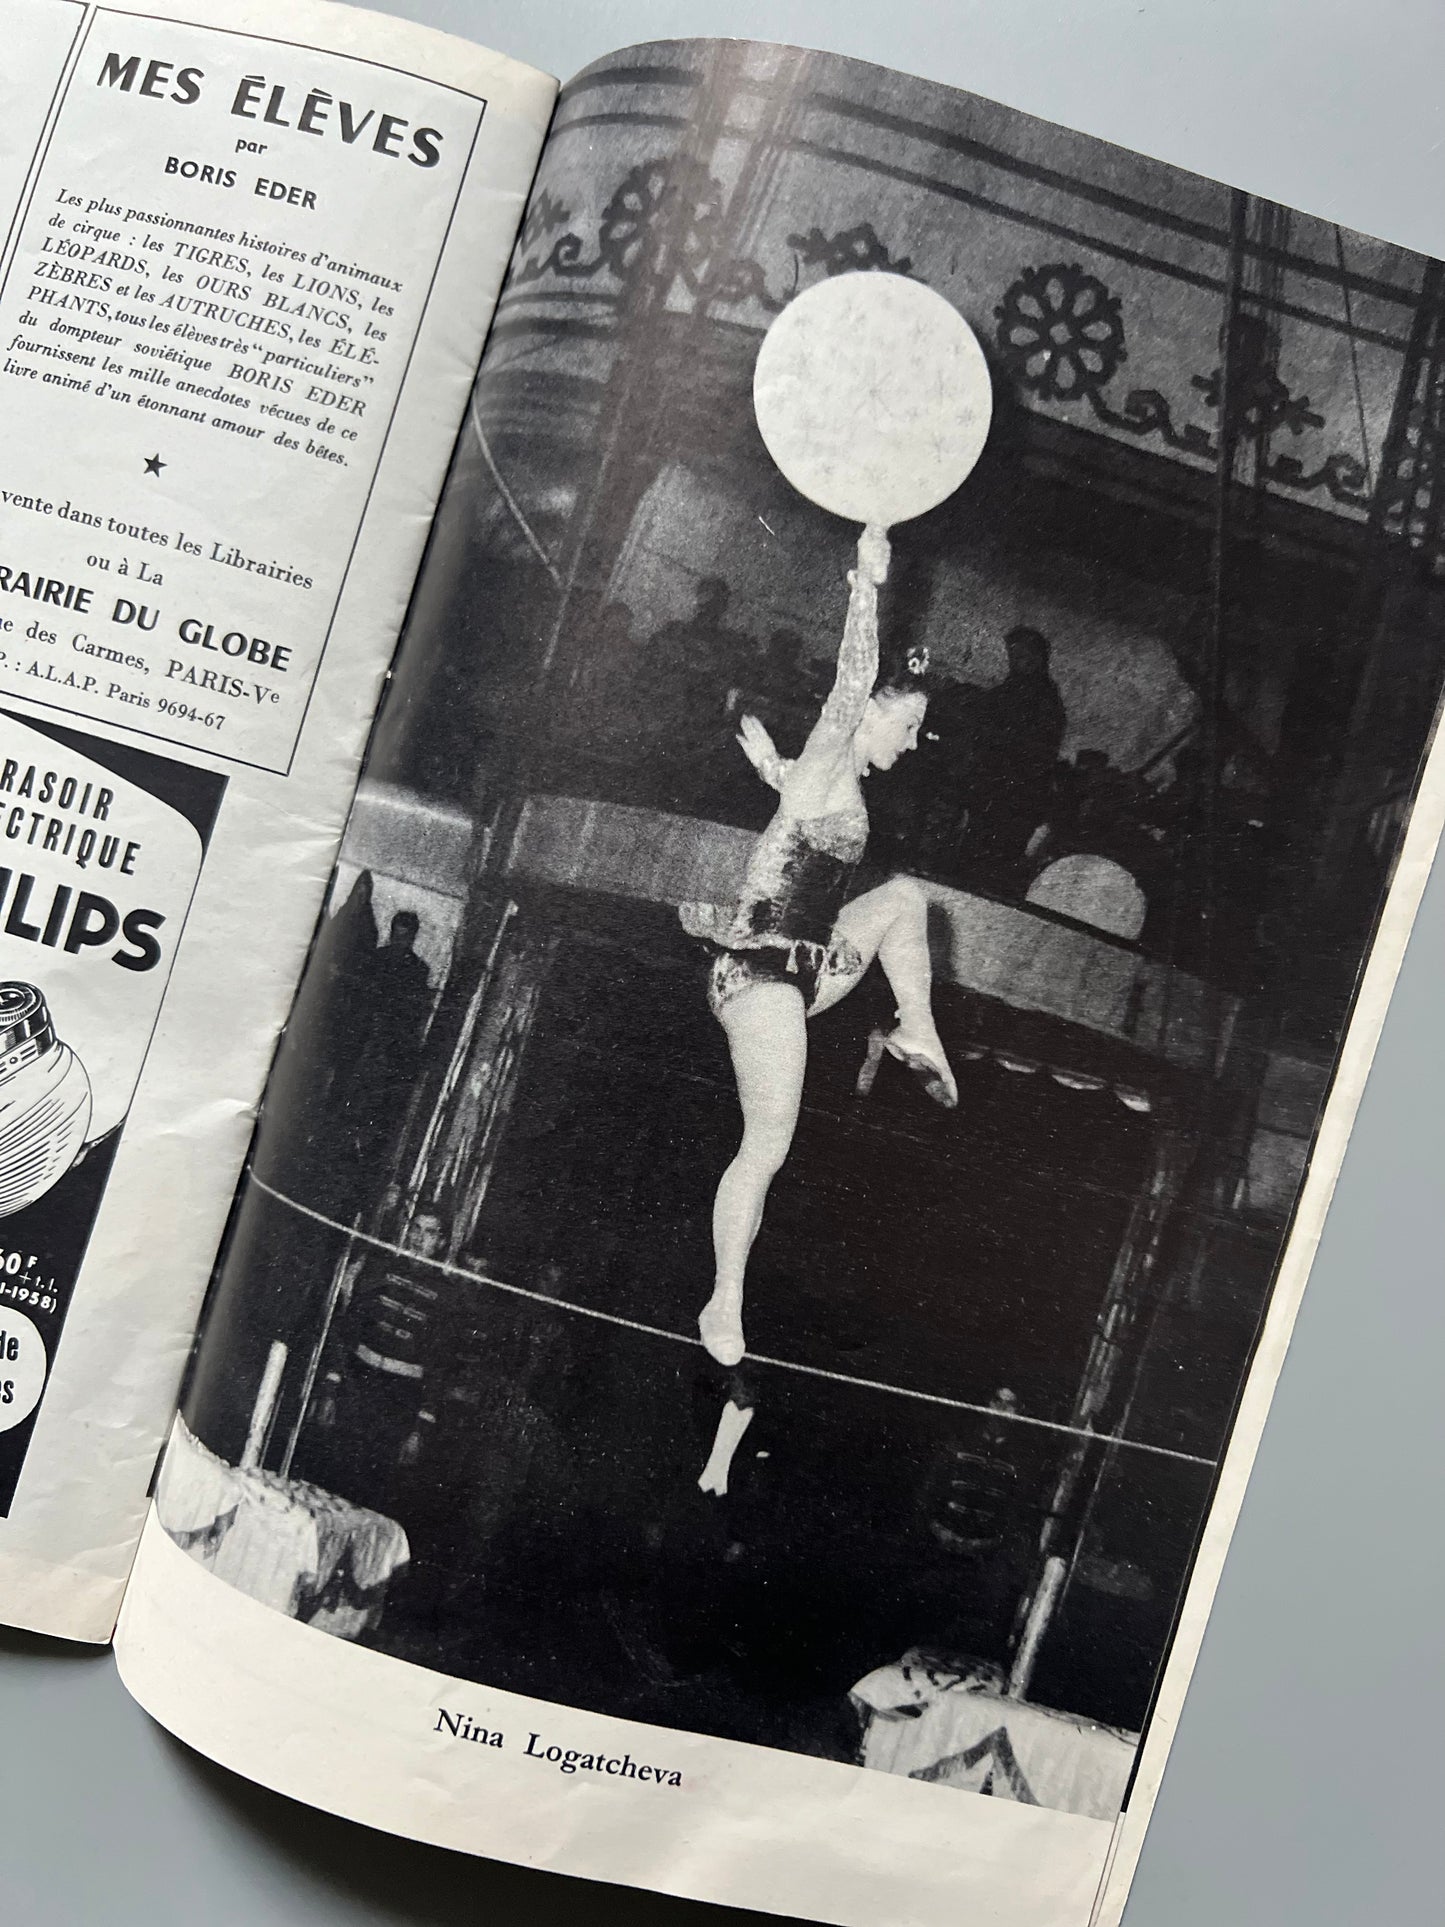 Programa del Circo de Moscou, Le Cirque d'etat de Moscou - 1958